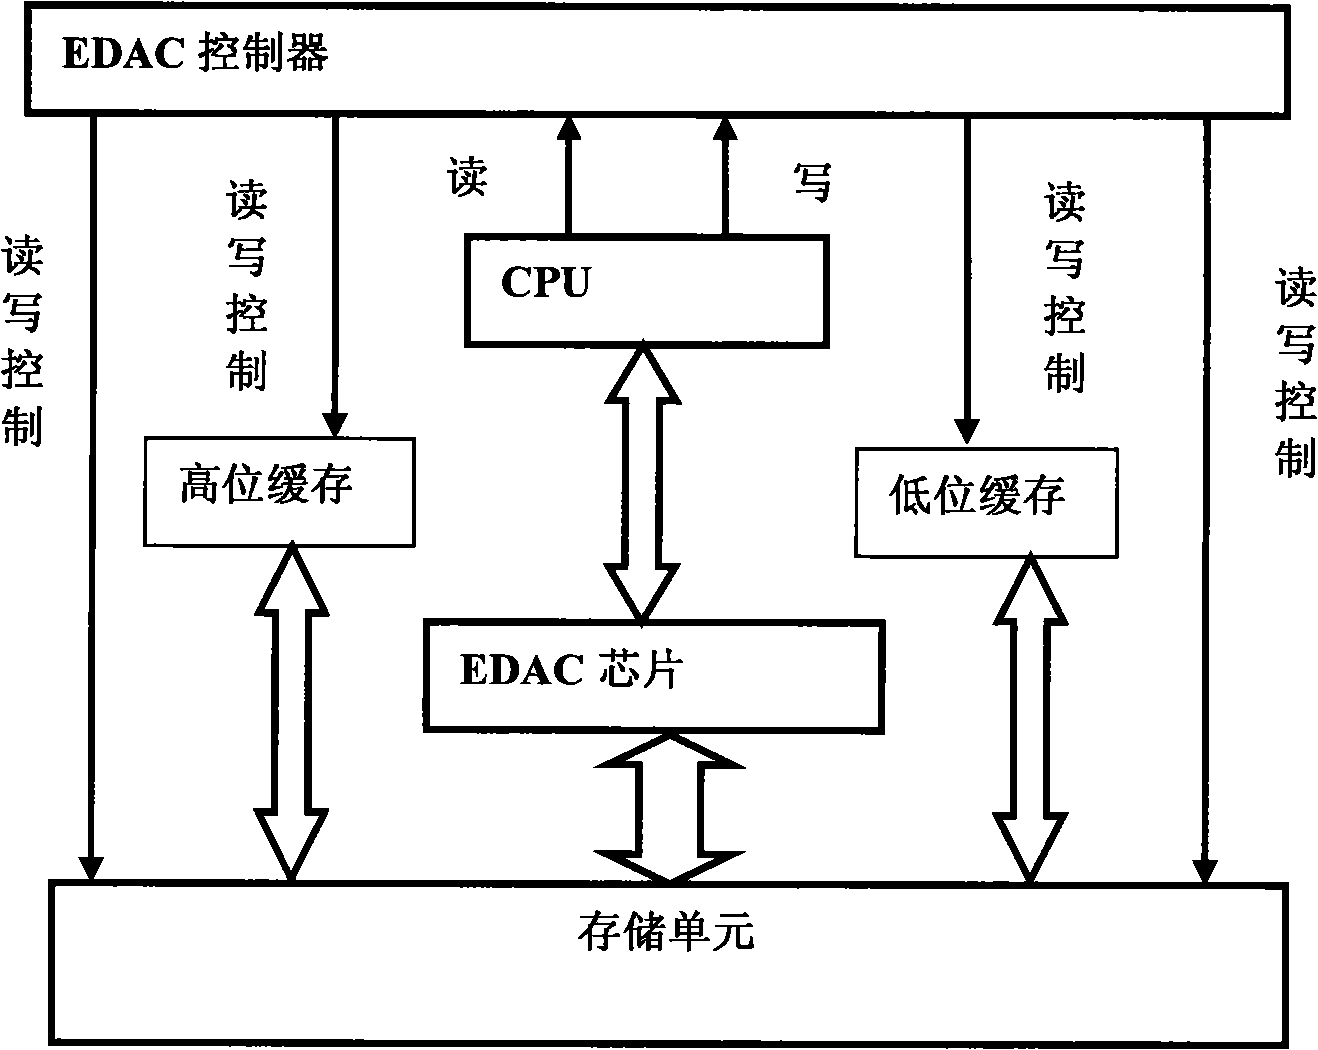 Method for restoring star load computer hardware scanning error